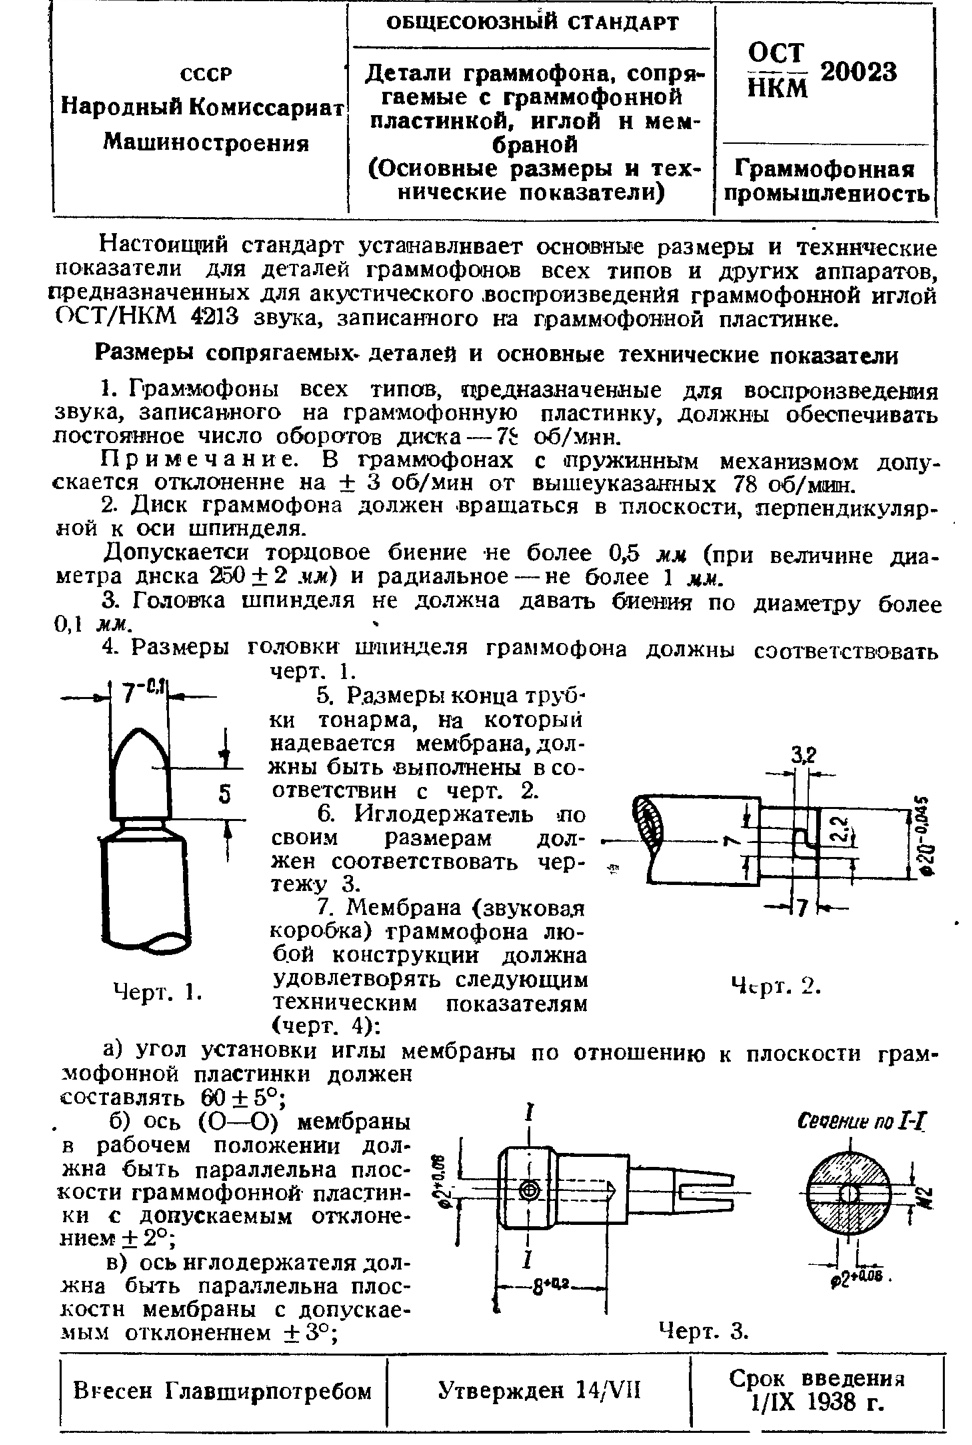 Детали граммофона, сопрягаемые с граммофонной пластинкой, иглой и мембраной (Основные размеры и технические показатели). ОСТ 20023 - срок введения 1 сентября 1938 года